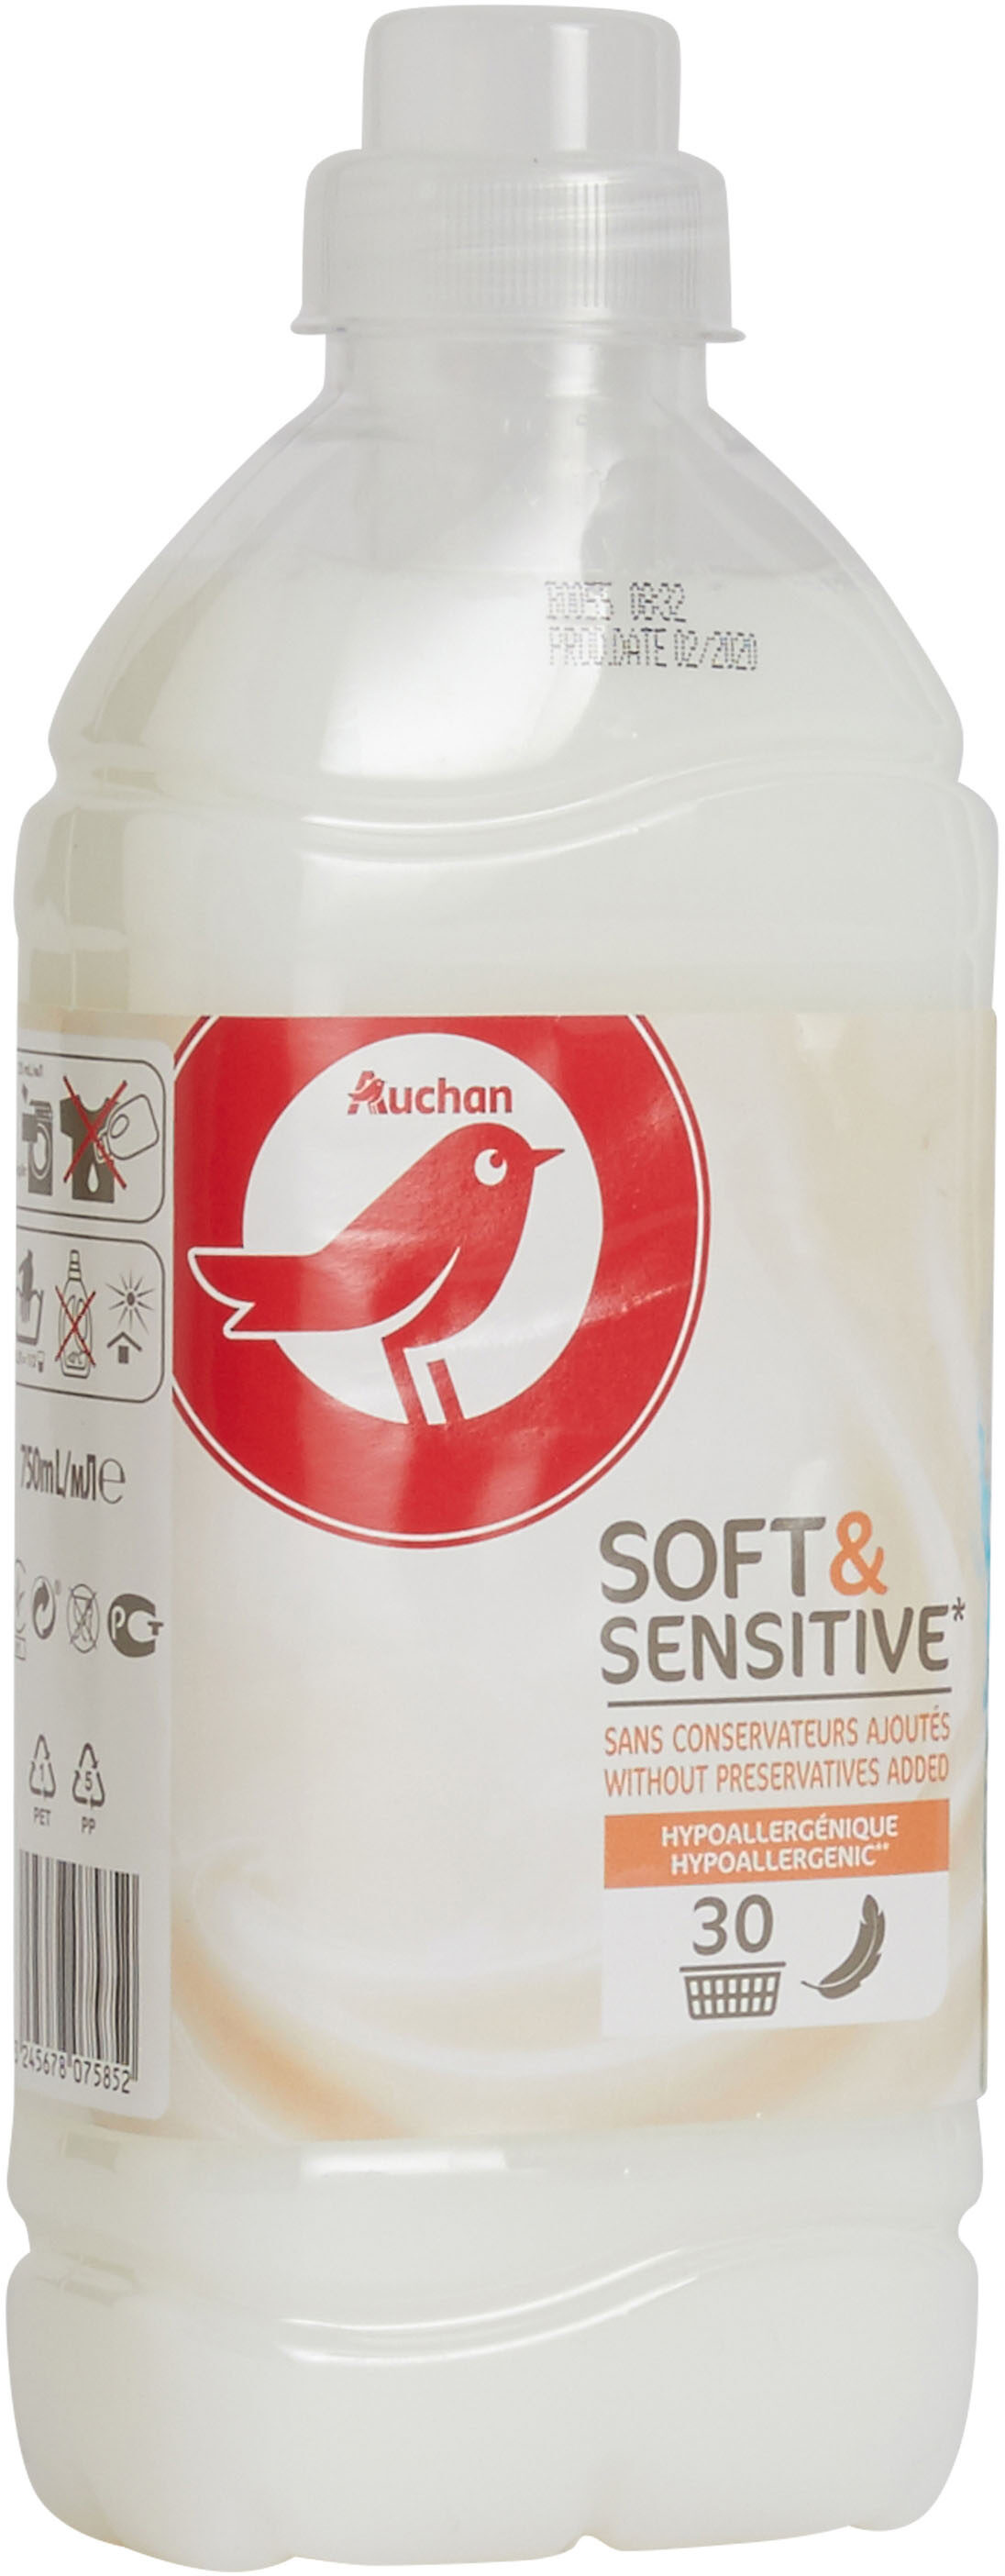 Auchan adoucissant liquide peaux sensibles 30 doses 750ml - Product - fr